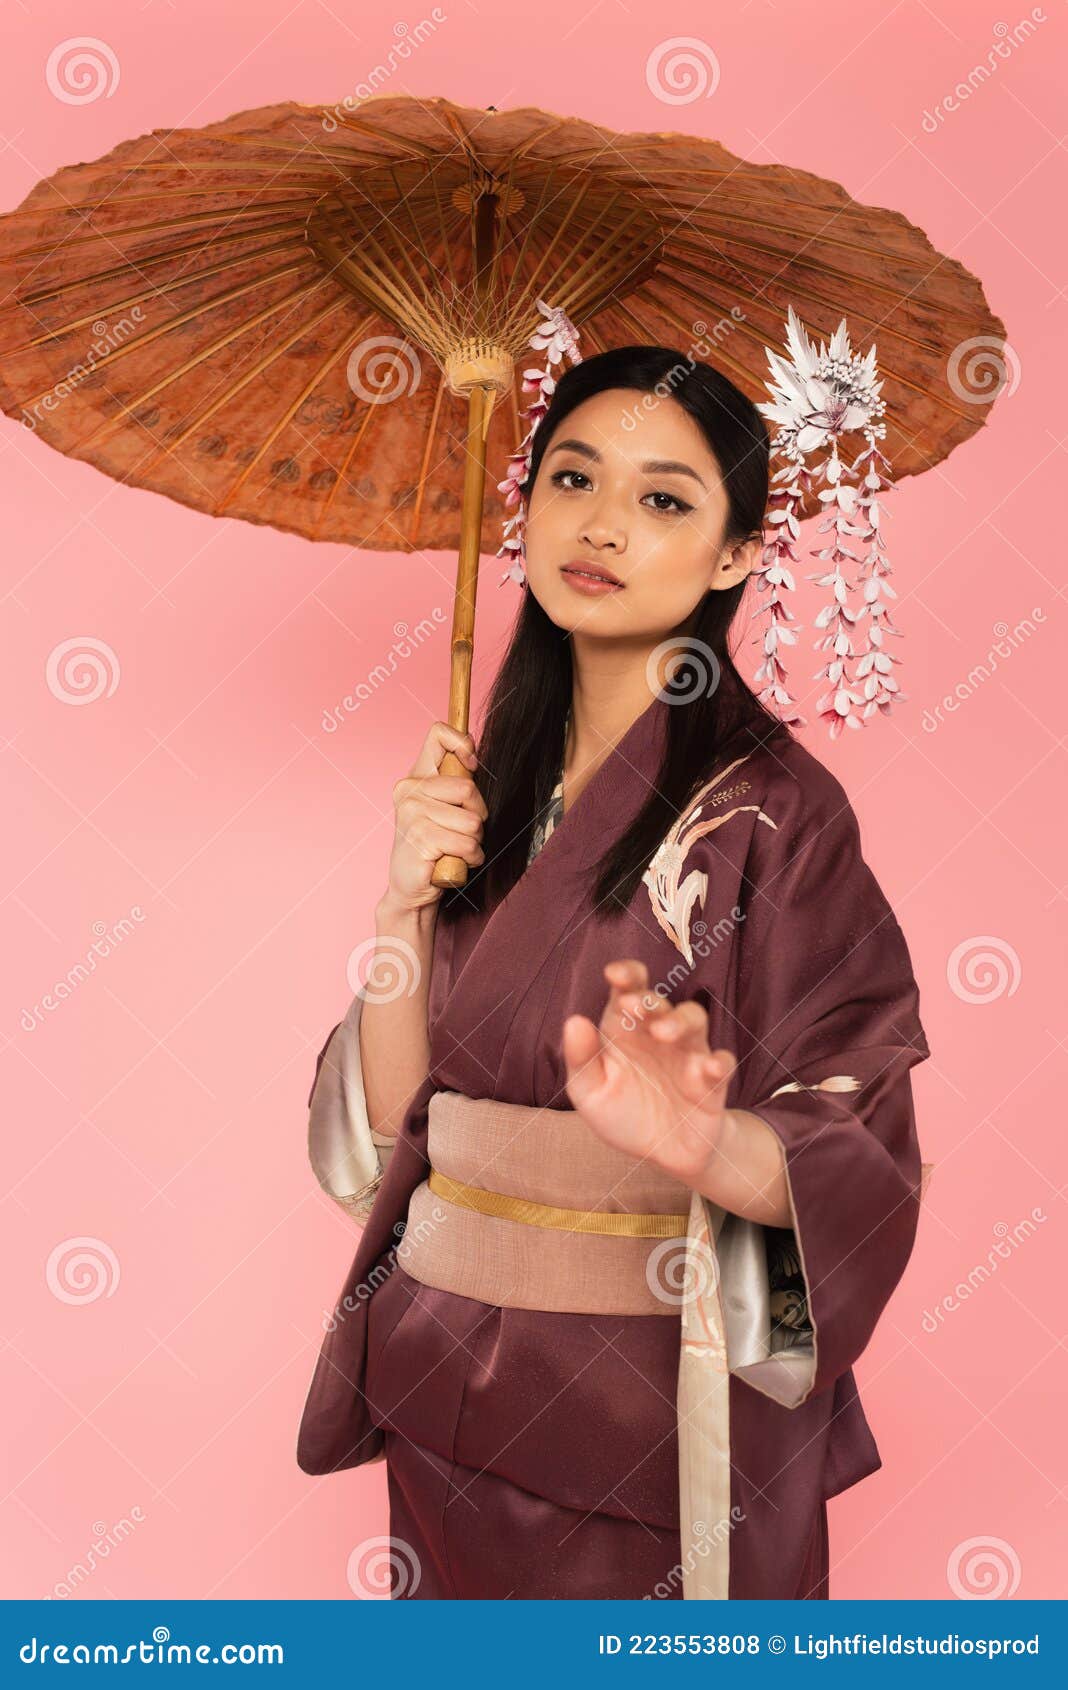 面容美丽的亚洲女人 库存照片. 图片 包括有 关心, 微笑, 聚会所, 成人, 相当, 汉语, 设计, 年轻 - 229083286